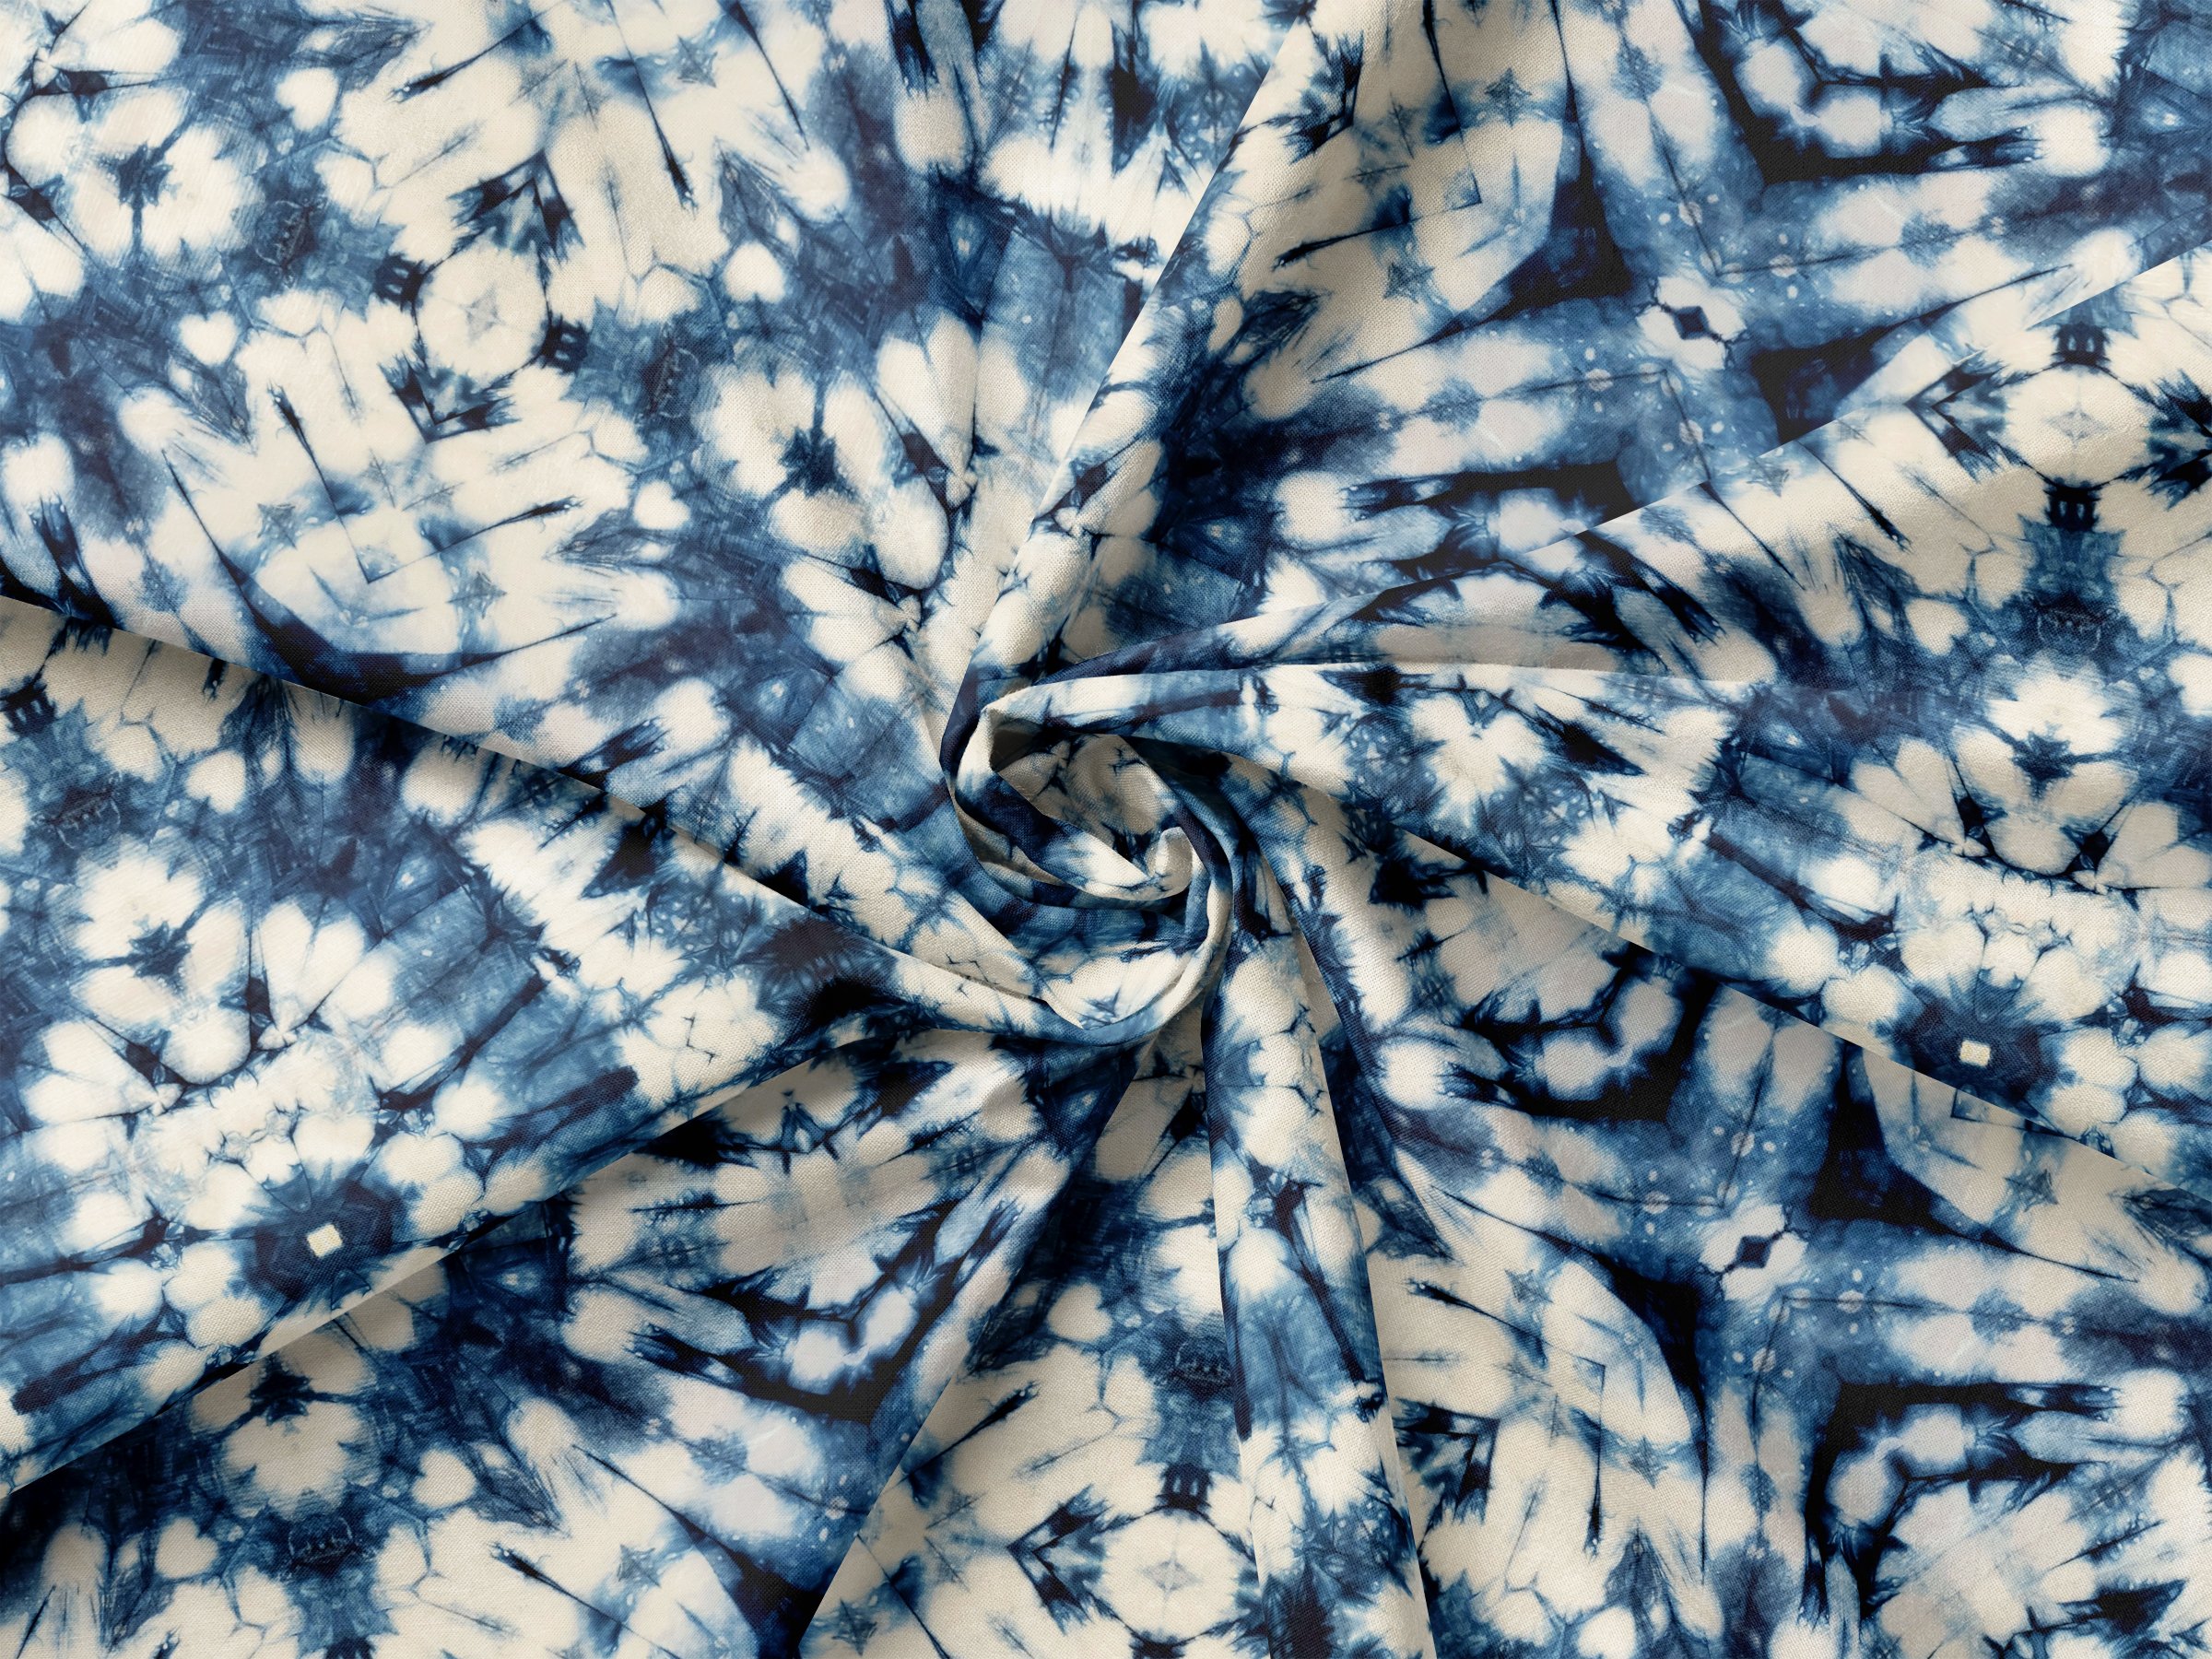 Shibori Tie-dye Seamless Pattern cover image.